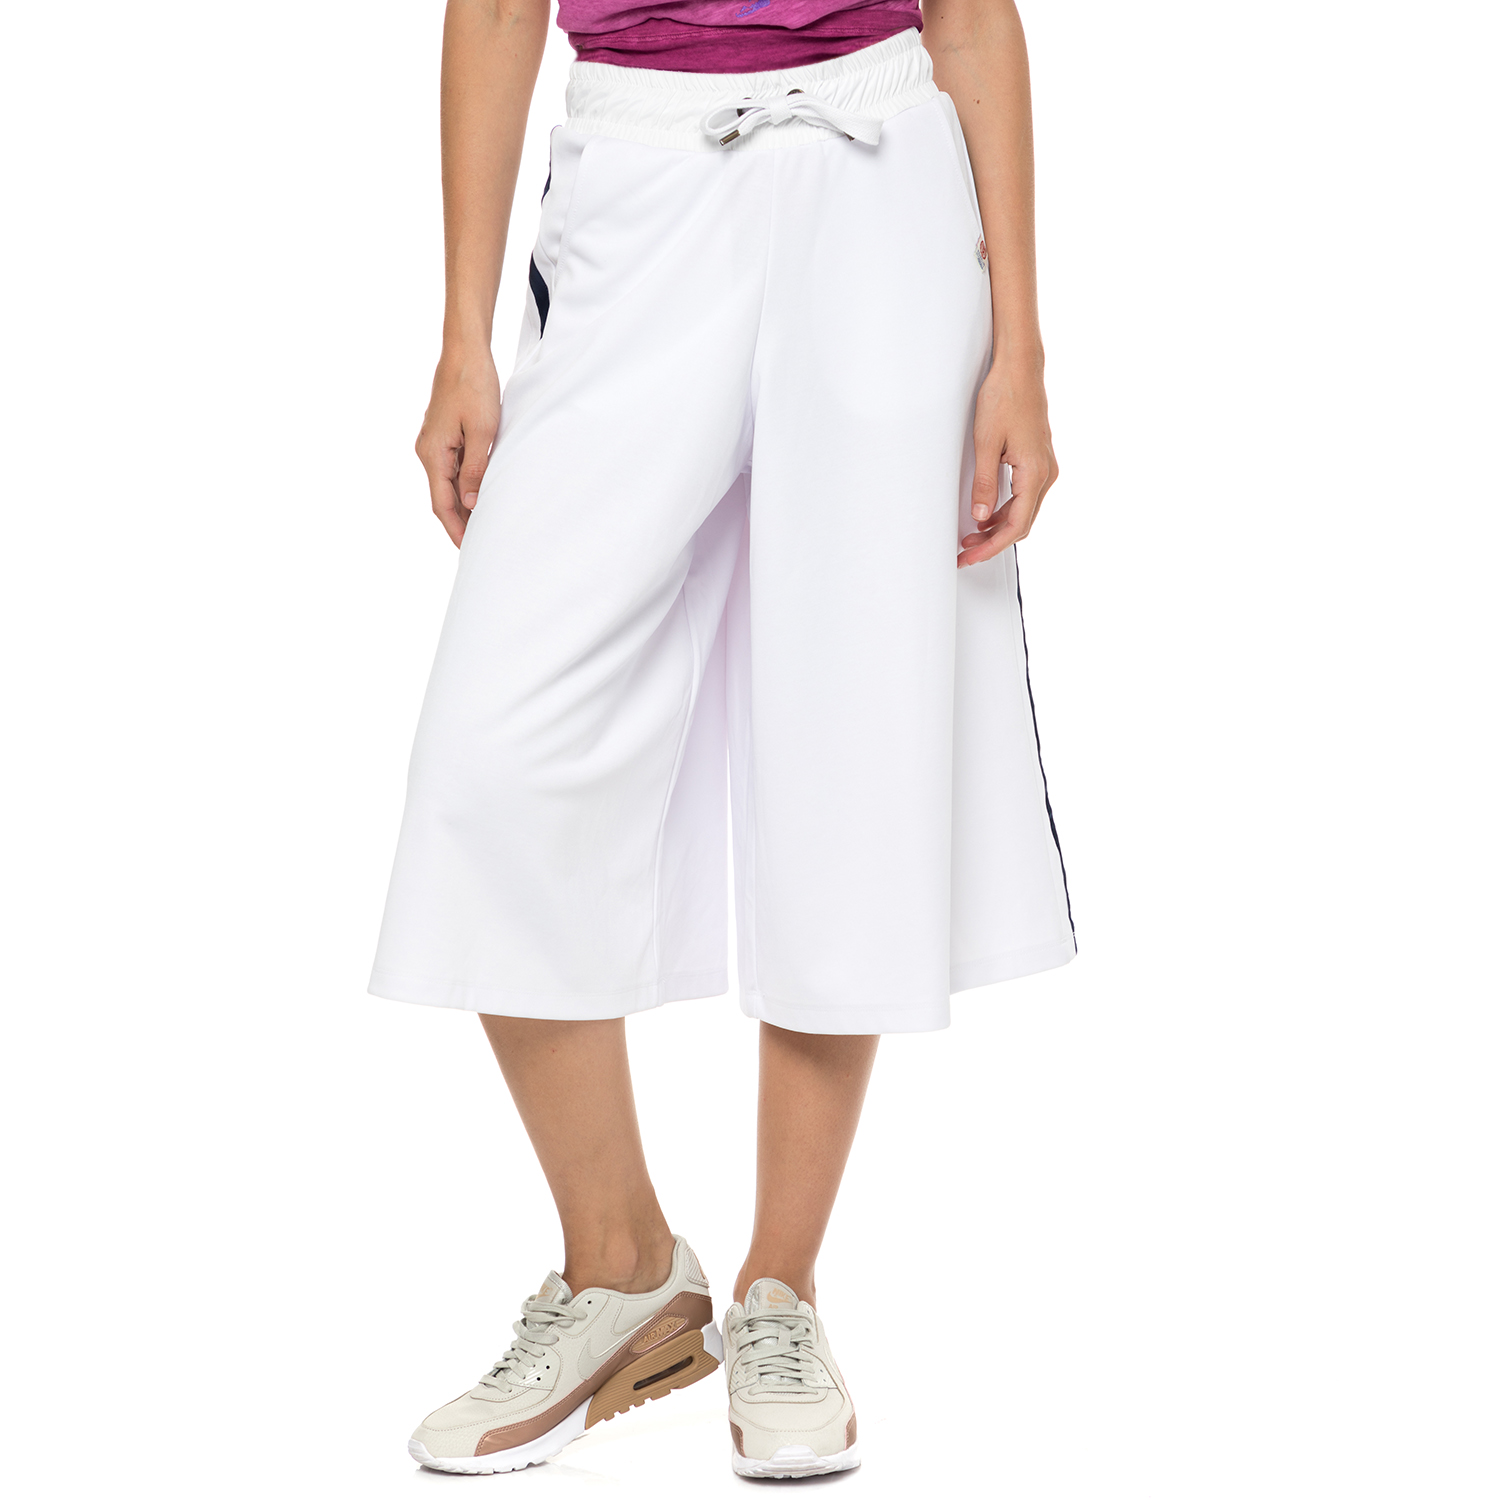 Γυναικεία/Ρούχα/Παντελόνια/Φόρμες FRANKLIN & MARSHALL - Γυναικείο crop παντελόνι φόρμας FRANKLIN & MARSHALL λευκό